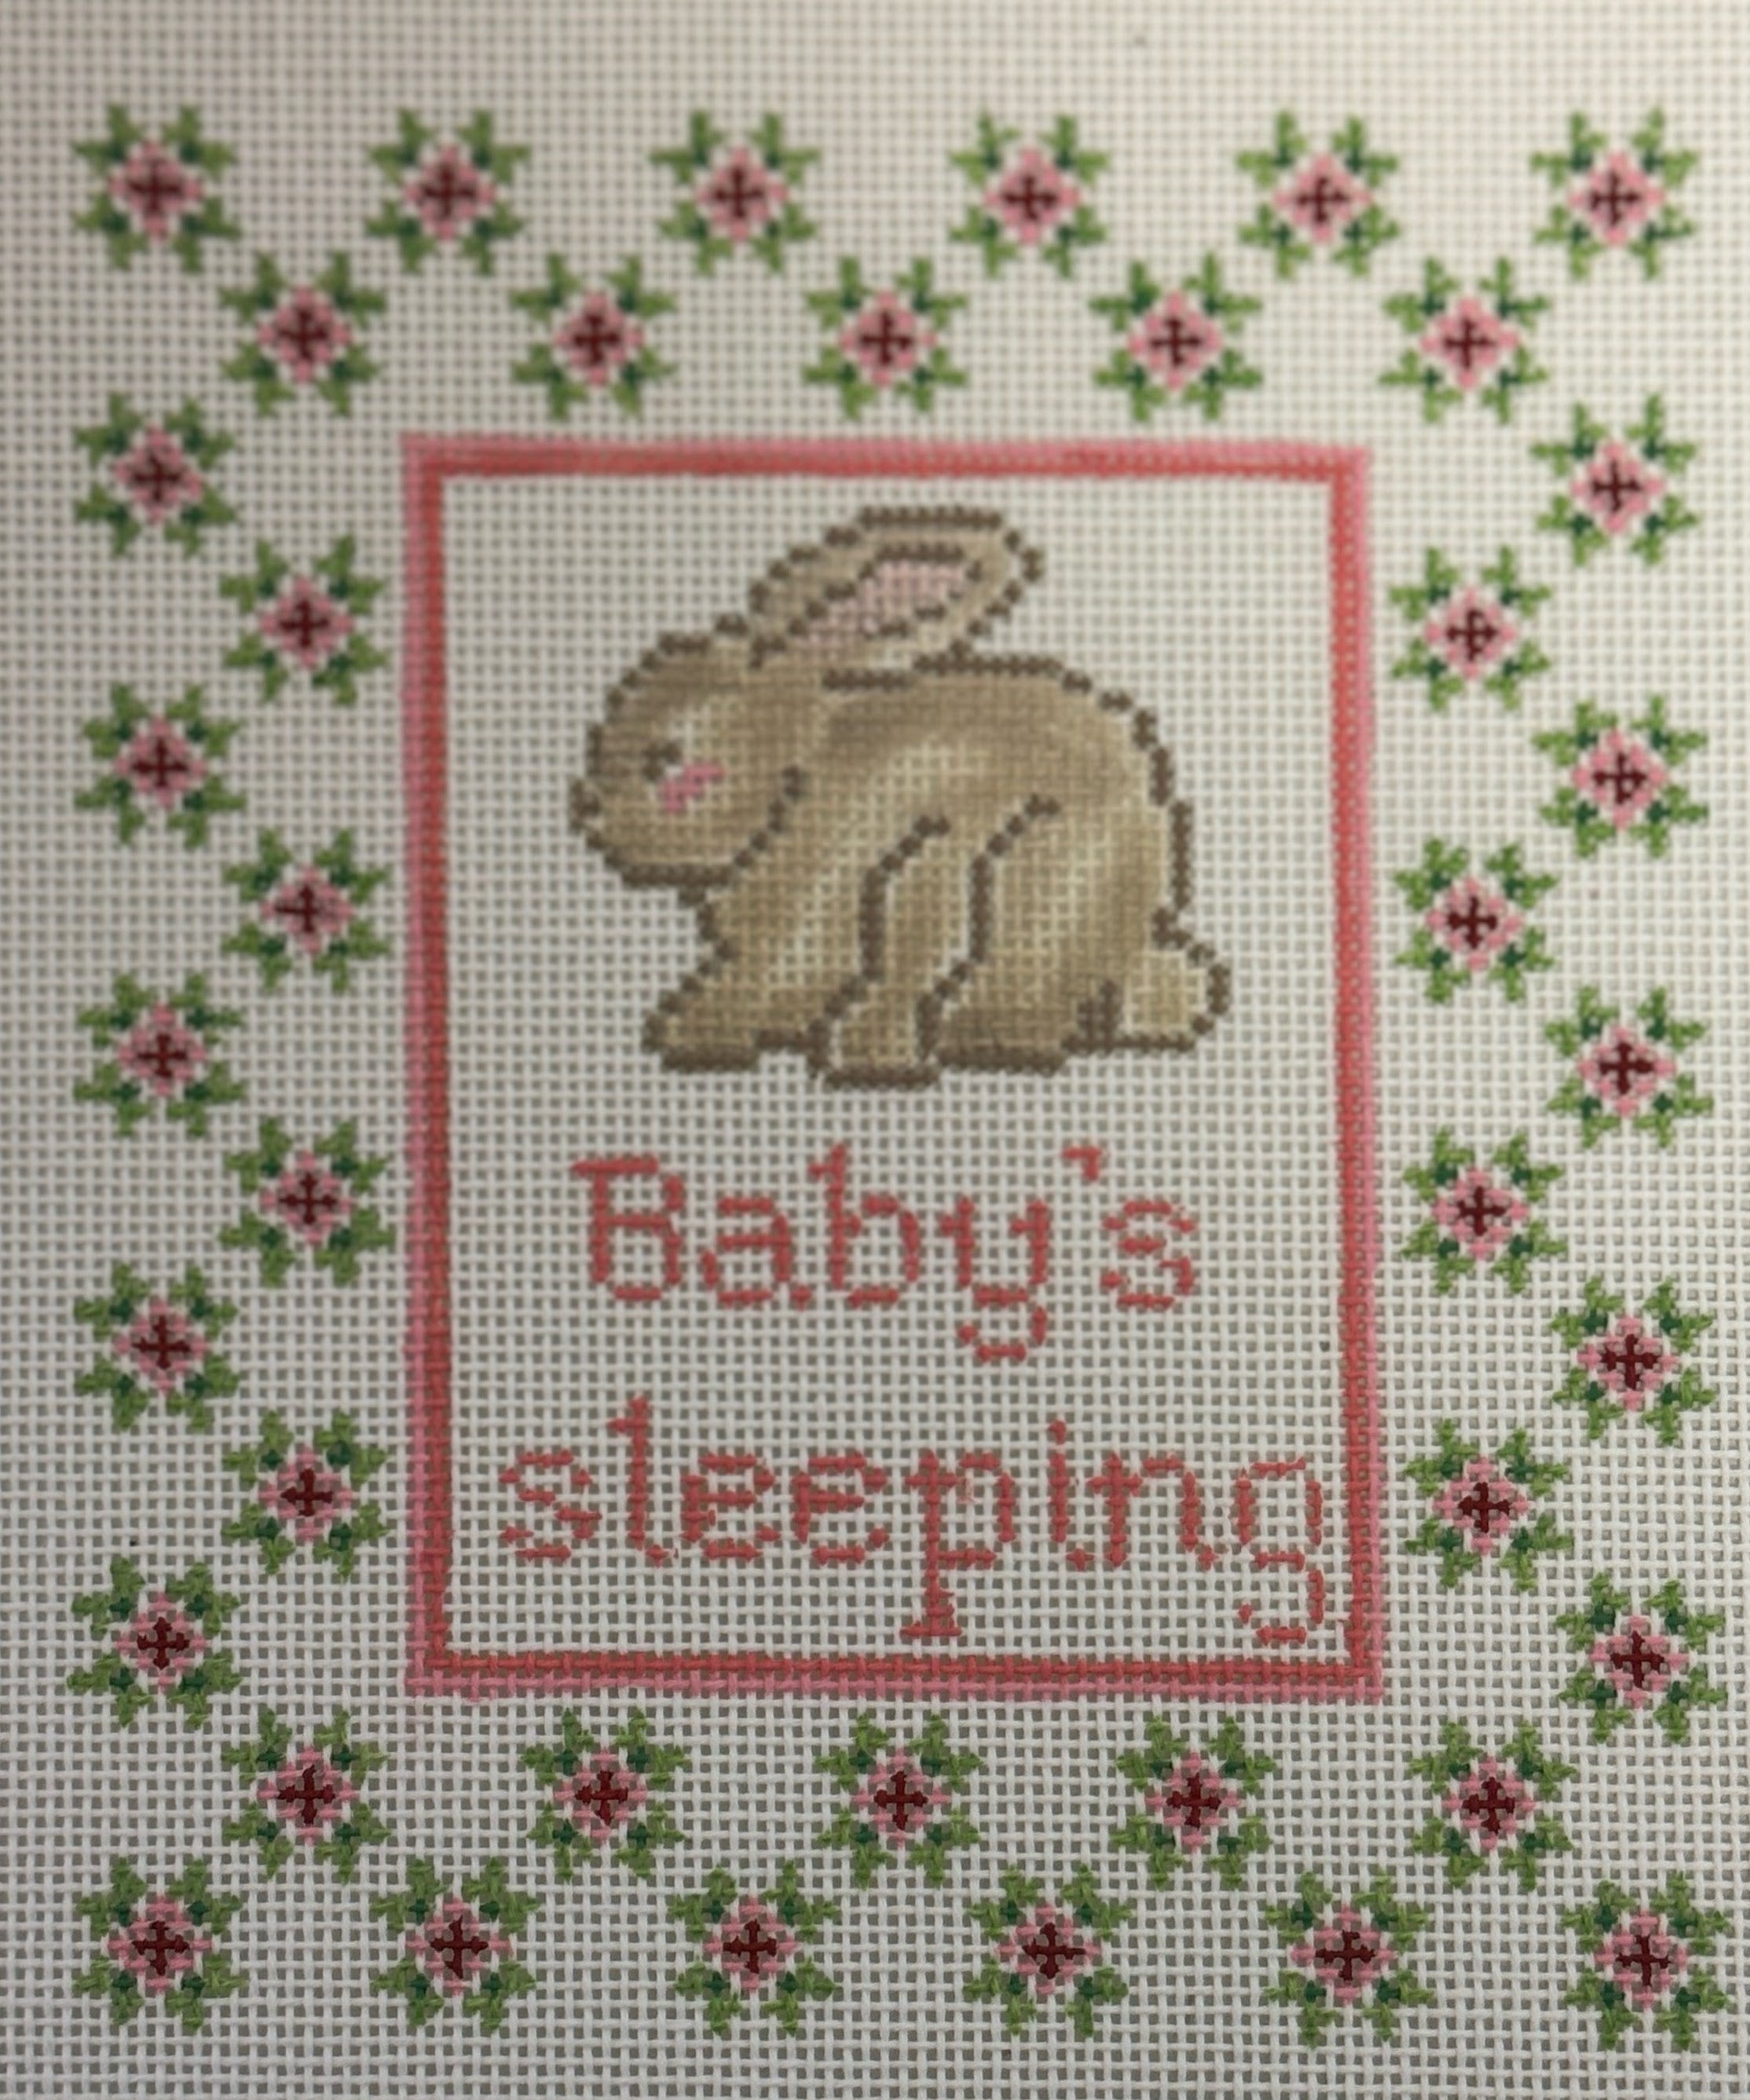 Baby Bunny Sleeping - The Flying Needles